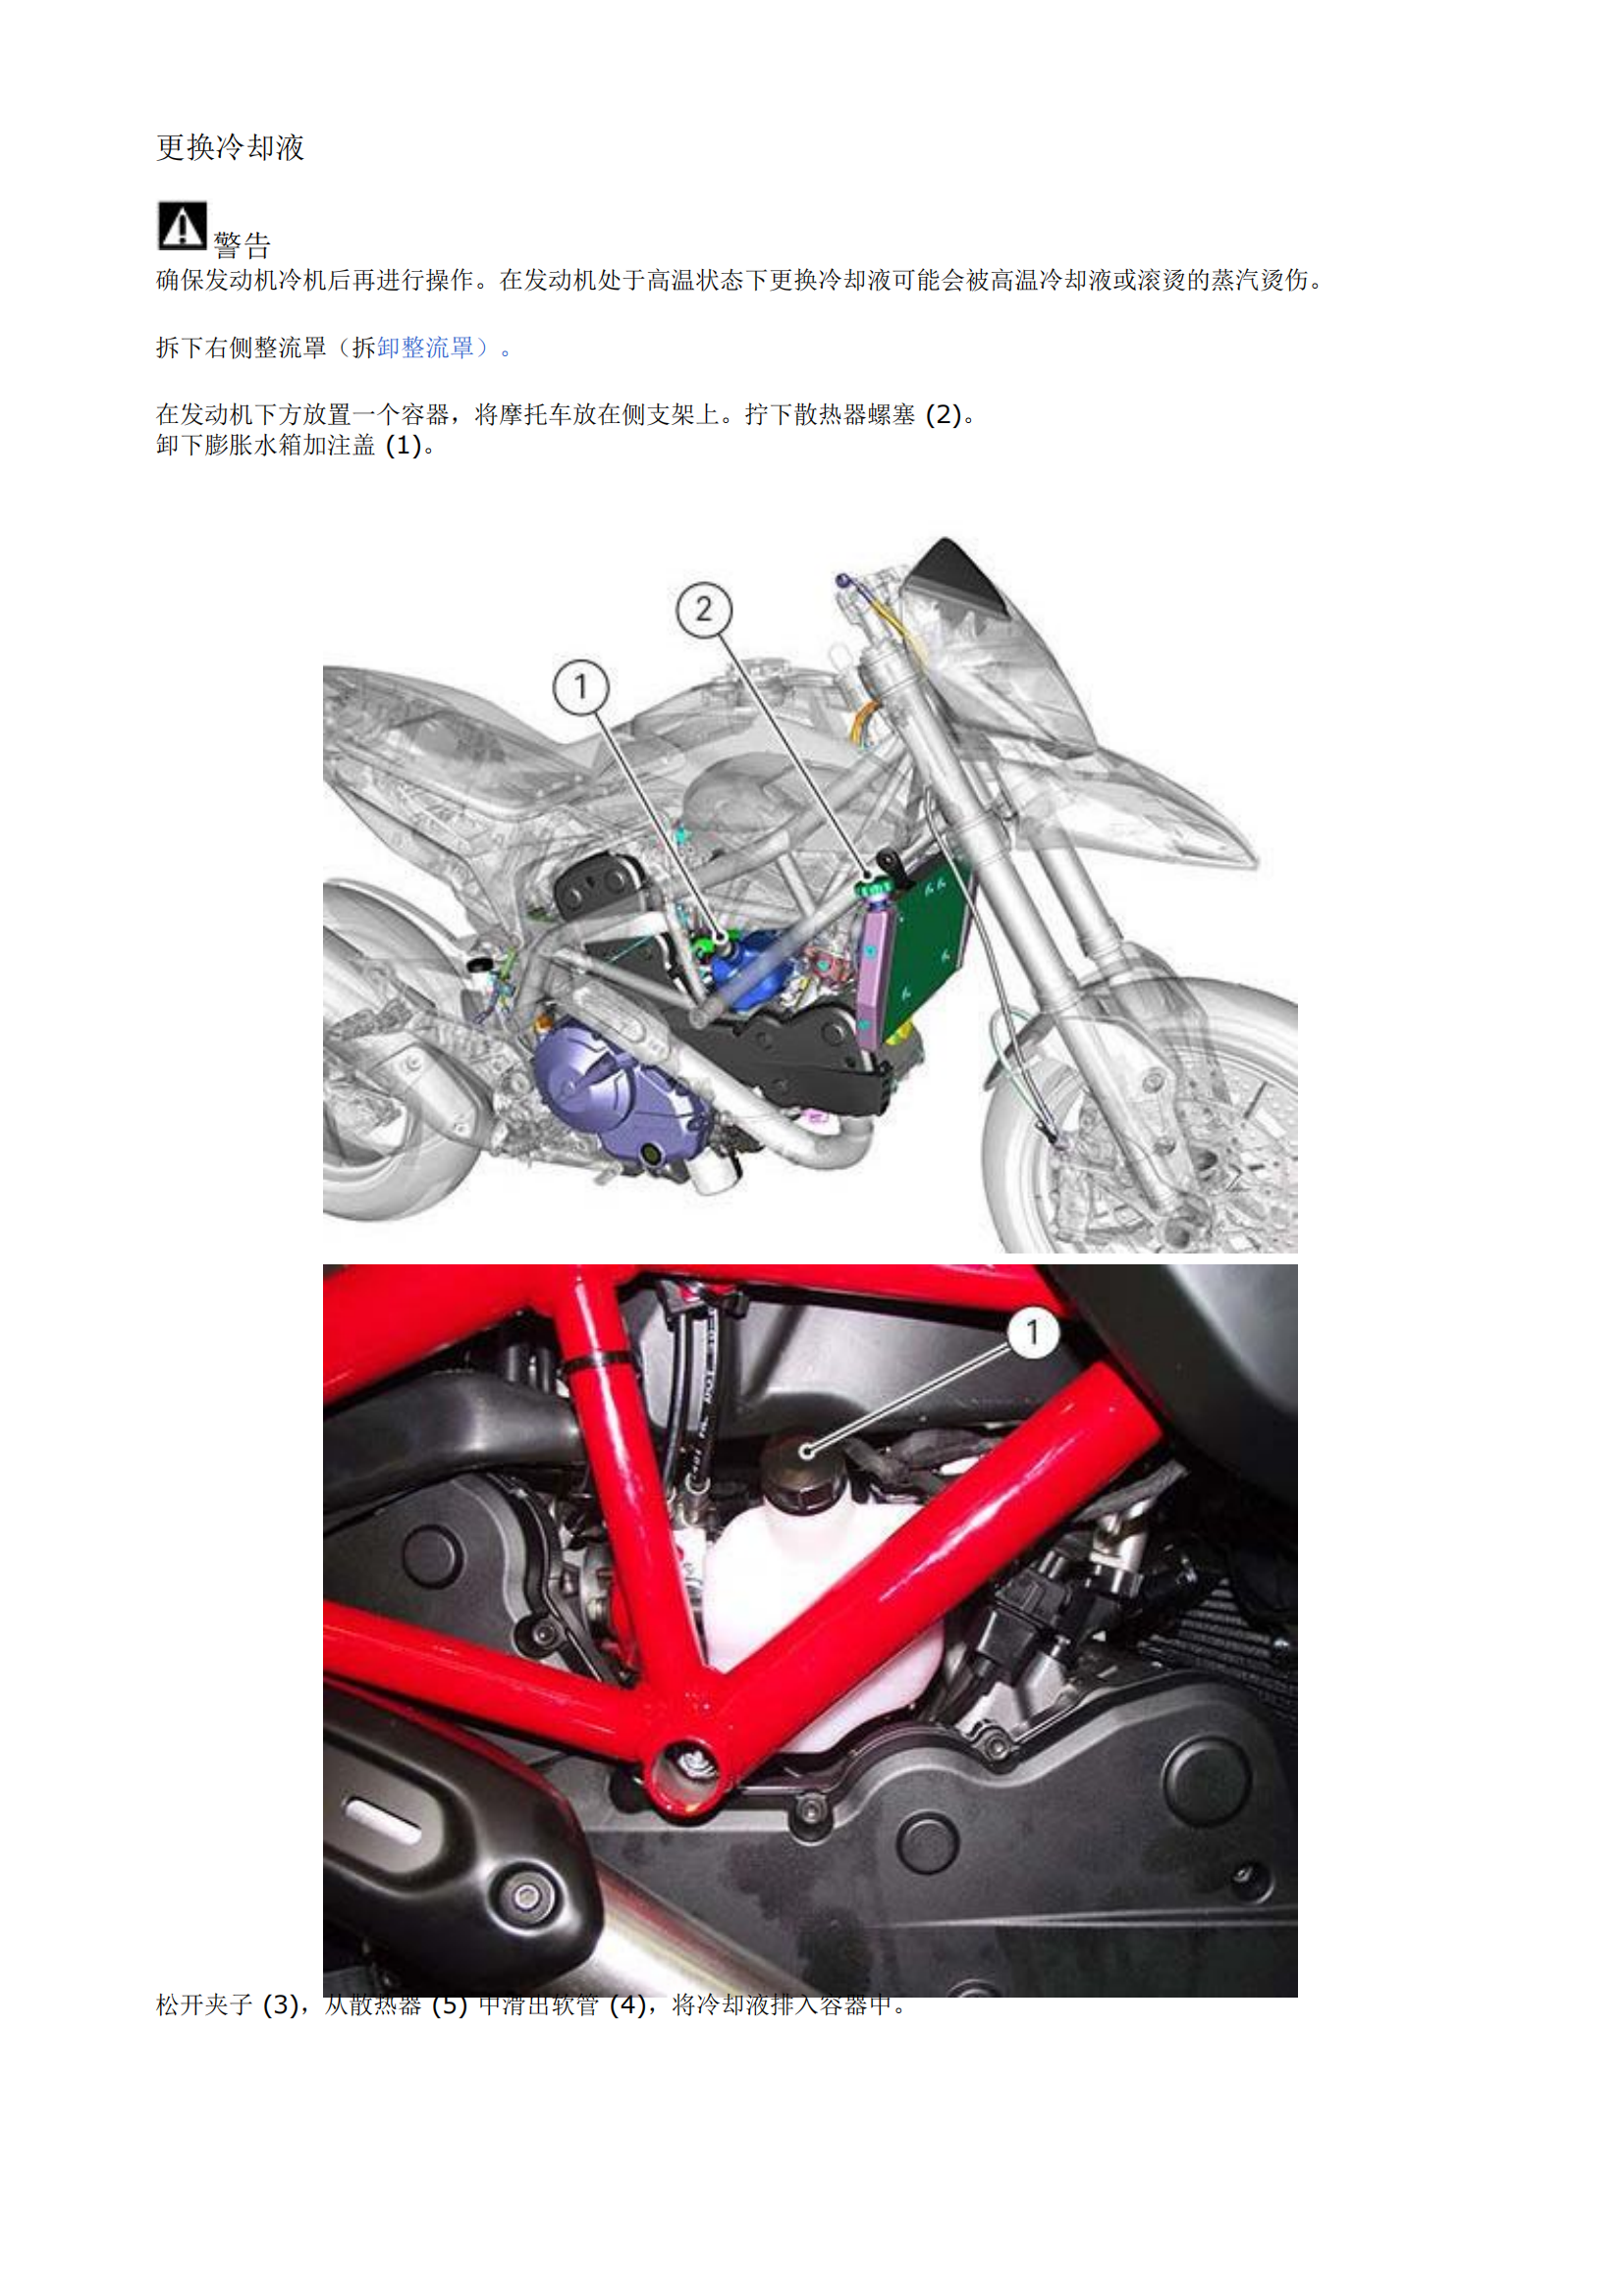 简体中文2014年杜卡迪骇道821 Ducati Hyperstrada维修手册插图1